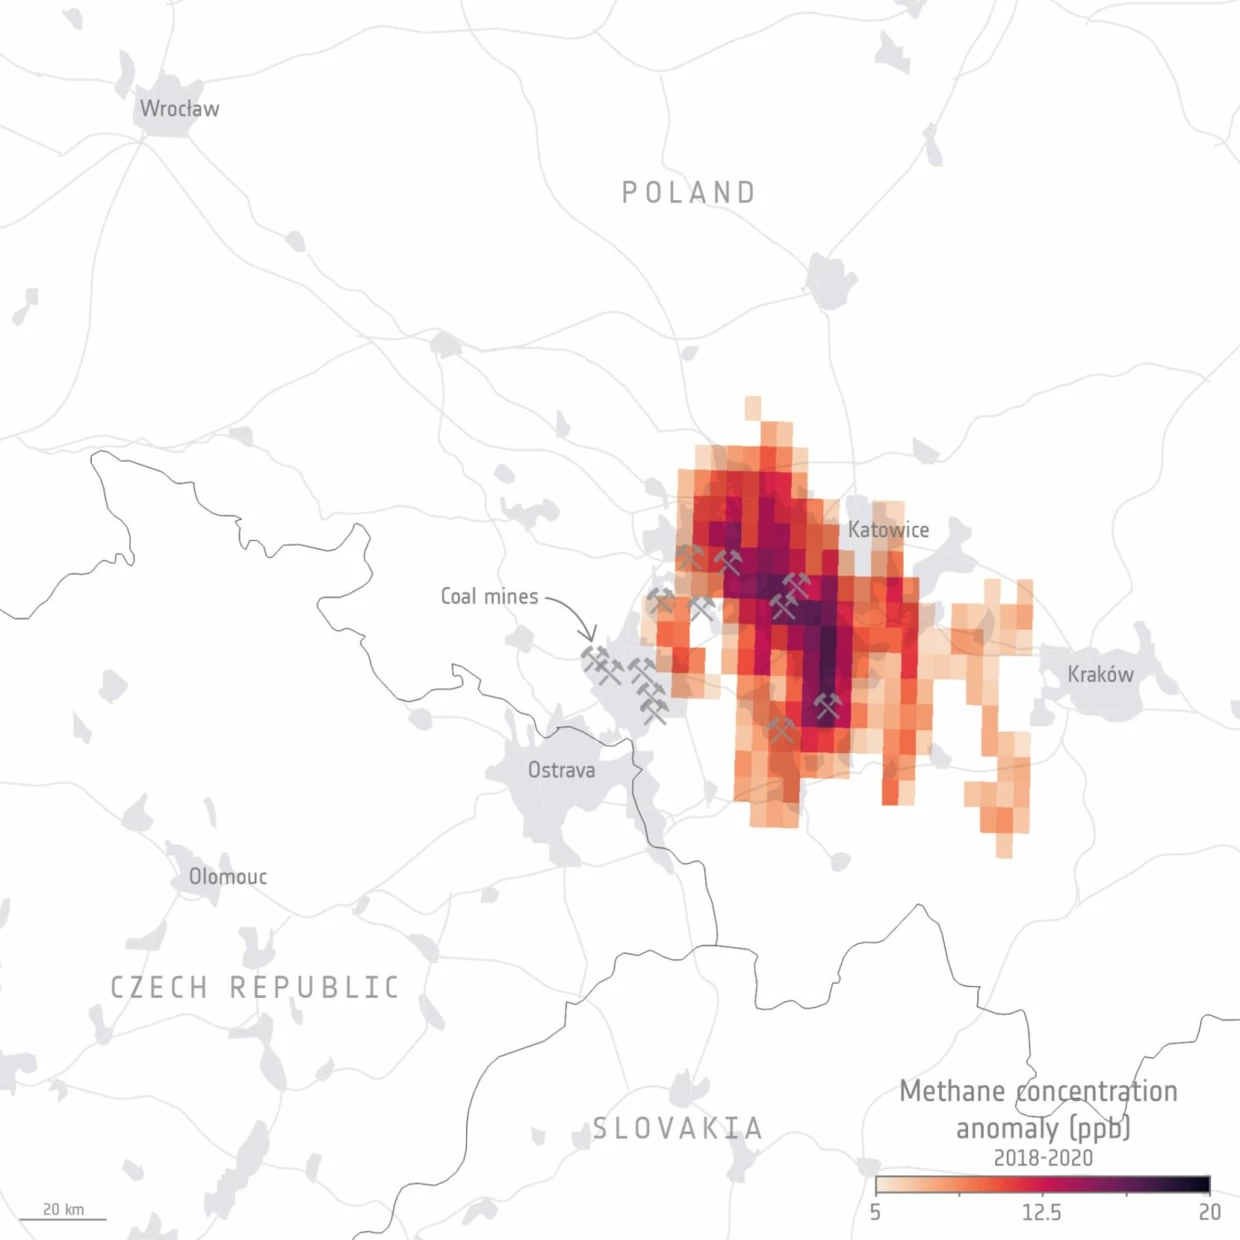 Emisje metanu z największych polskich kopalń. Wizualizacja danych satelitarnych uzyskanych w latach 2018-2020 przez Europejską Agencję Kosmiczną w ramach programu Copernicus Sentinel-5P